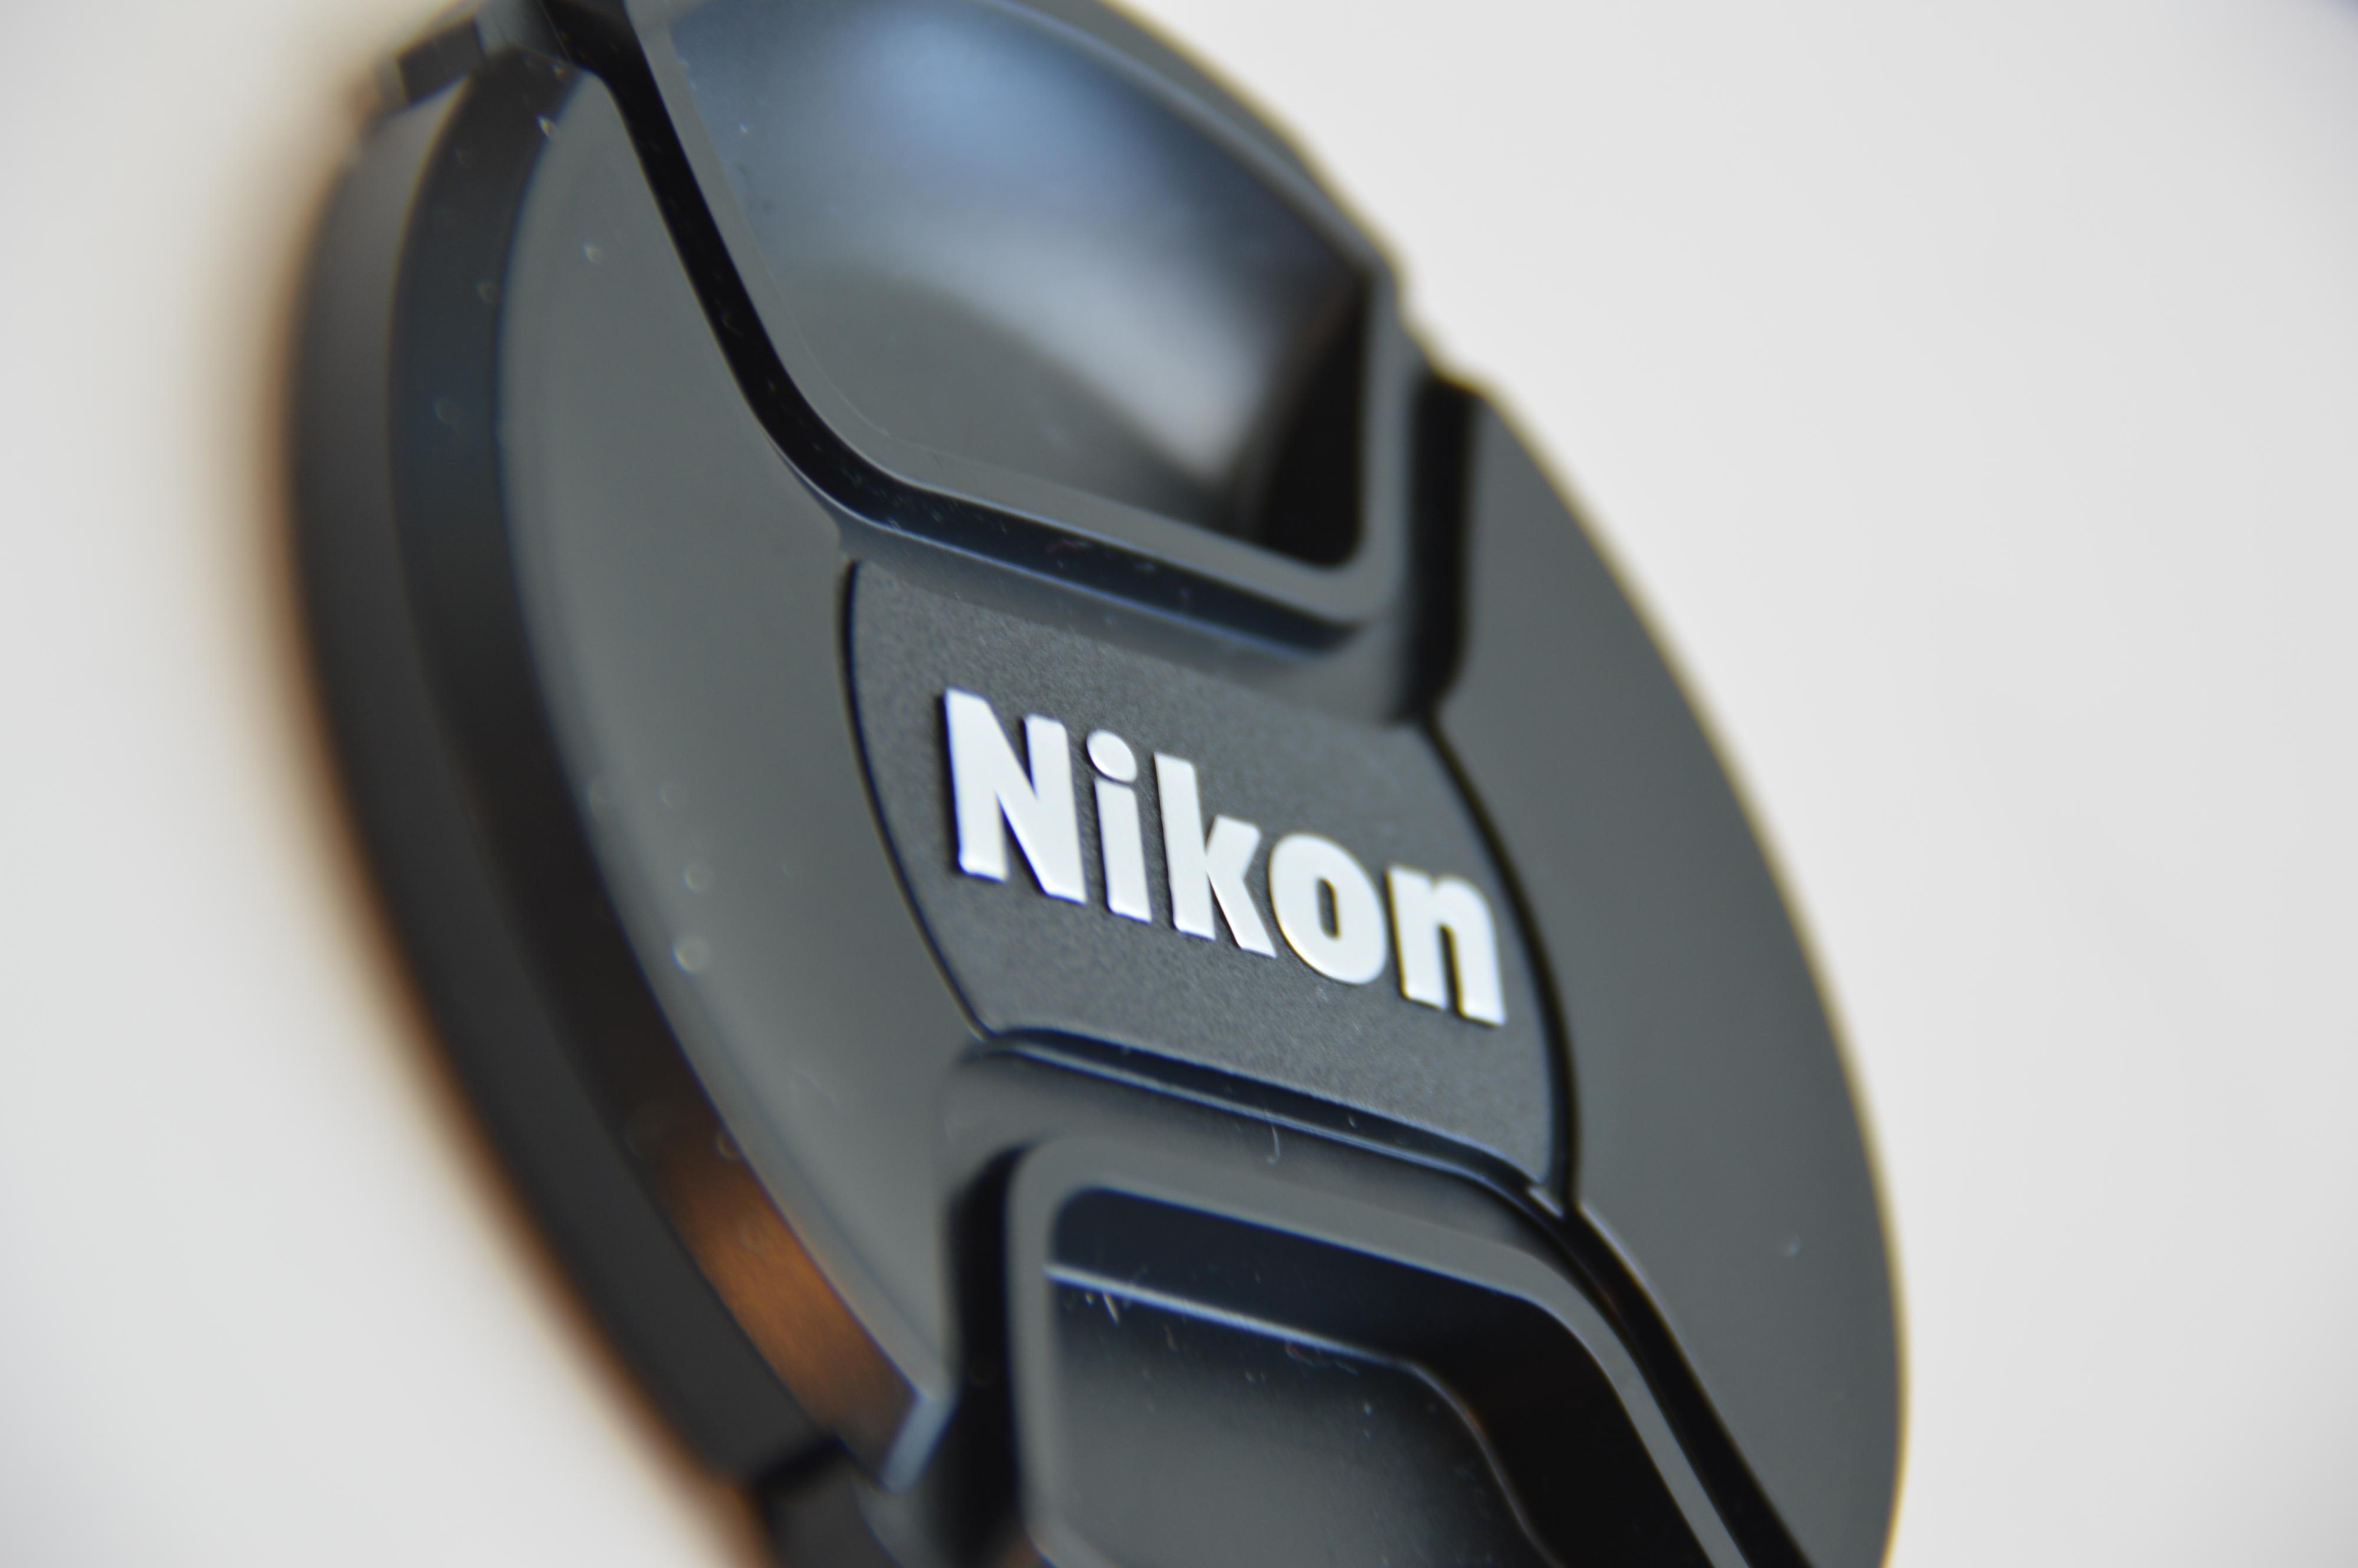 Nikon-lokk, D3200 på f/5.6, 300 mm, lukker 1/5, iso 100.Foto: Eivind Hauger, Akam.no